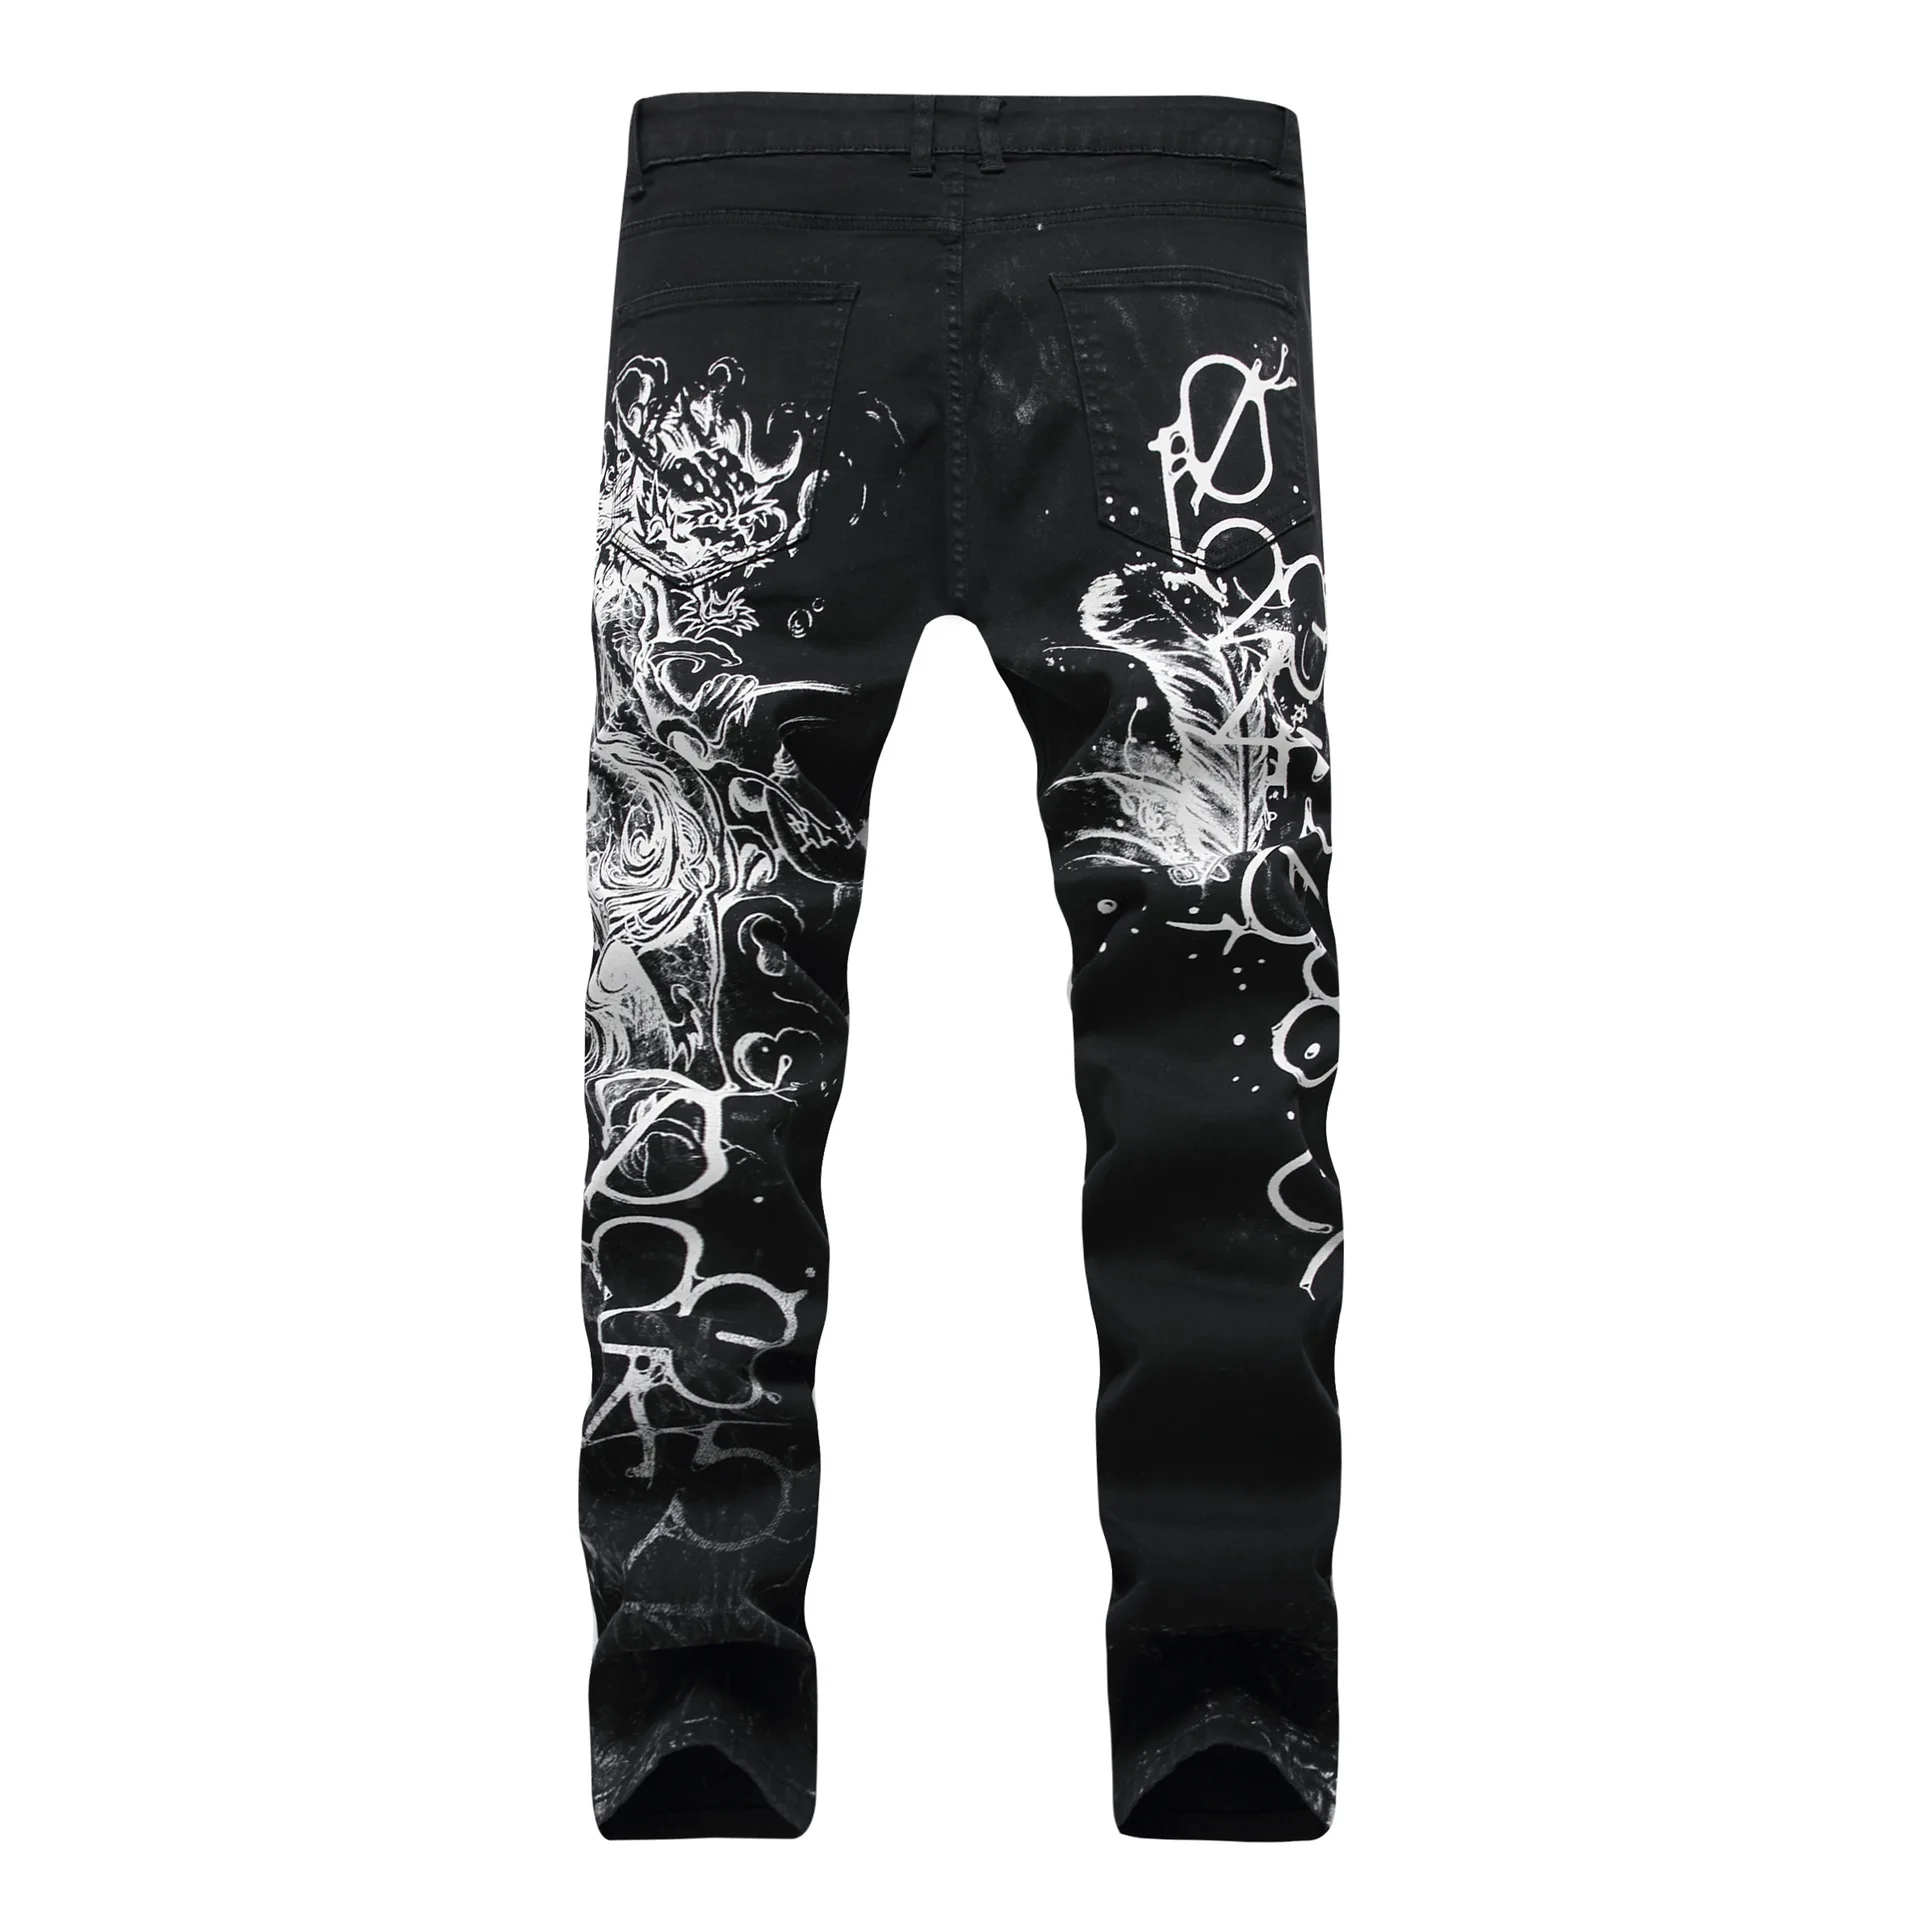 HMILY мужские джинсы байкерские обтягивающие рваные лакированные джинсы брюки с принтом льва рваная уличная одежда джинсовые брюки большие размеры 28-42